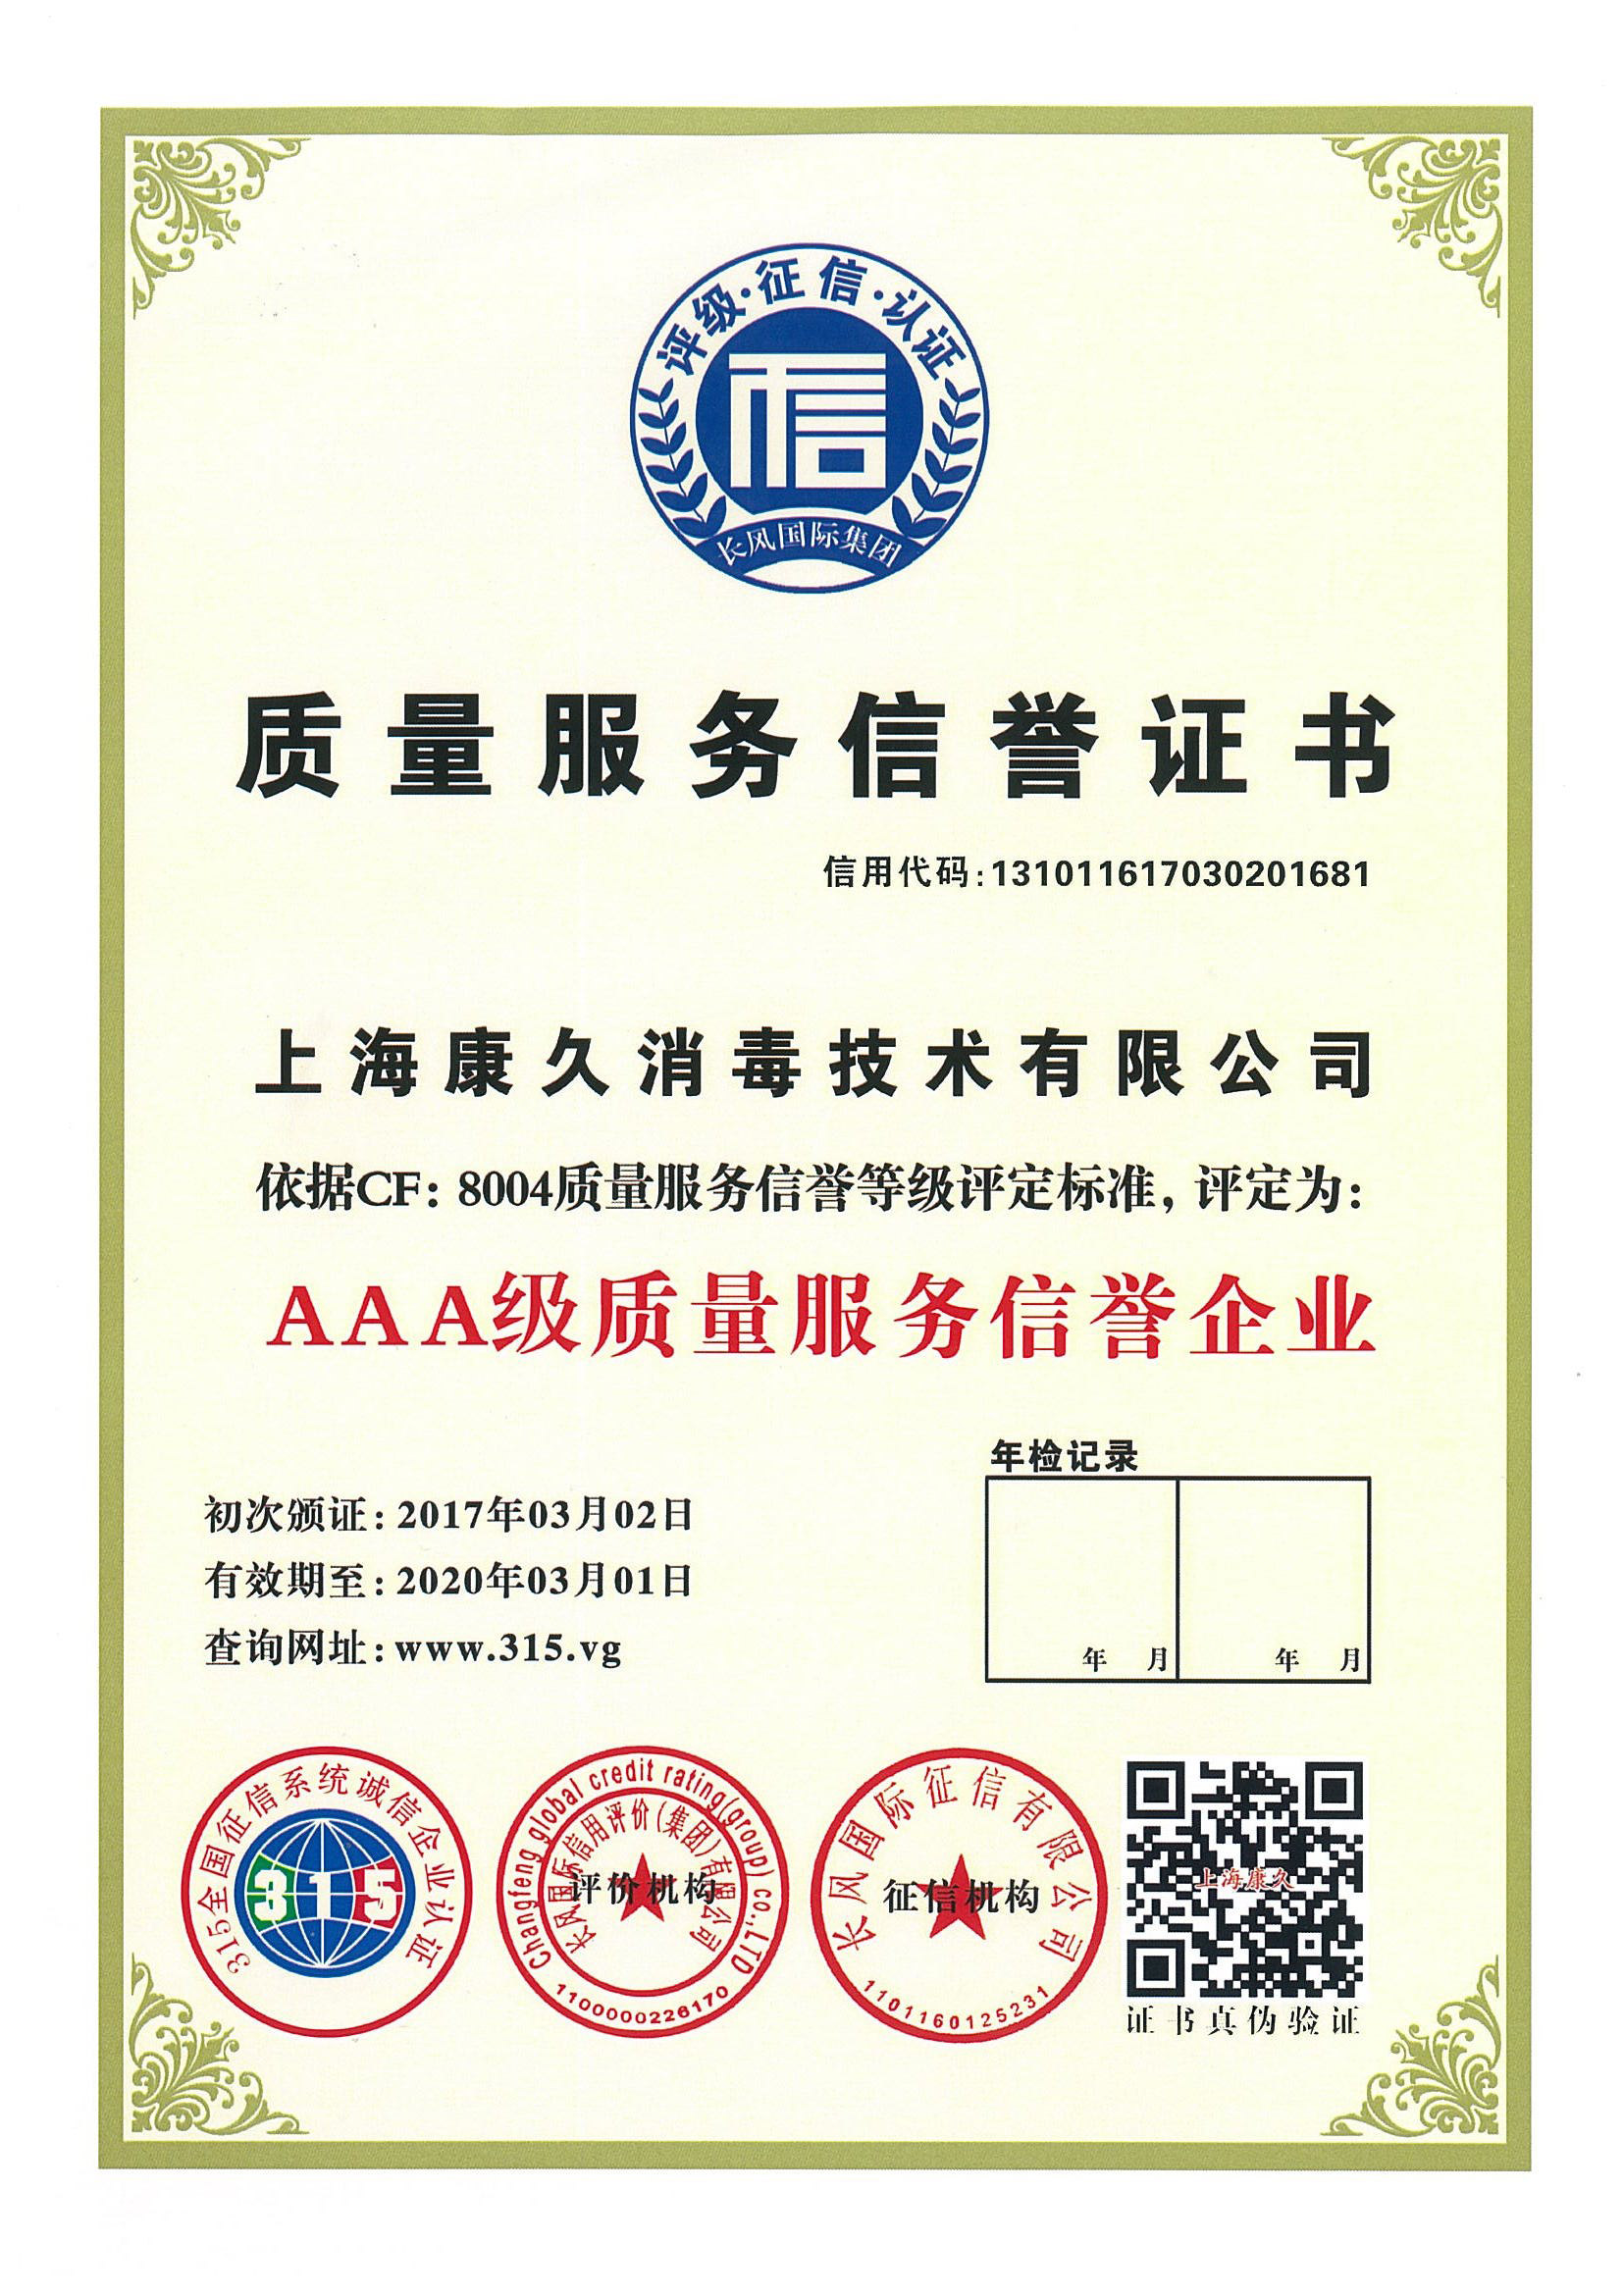 “九龙坡质量服务信誉证书